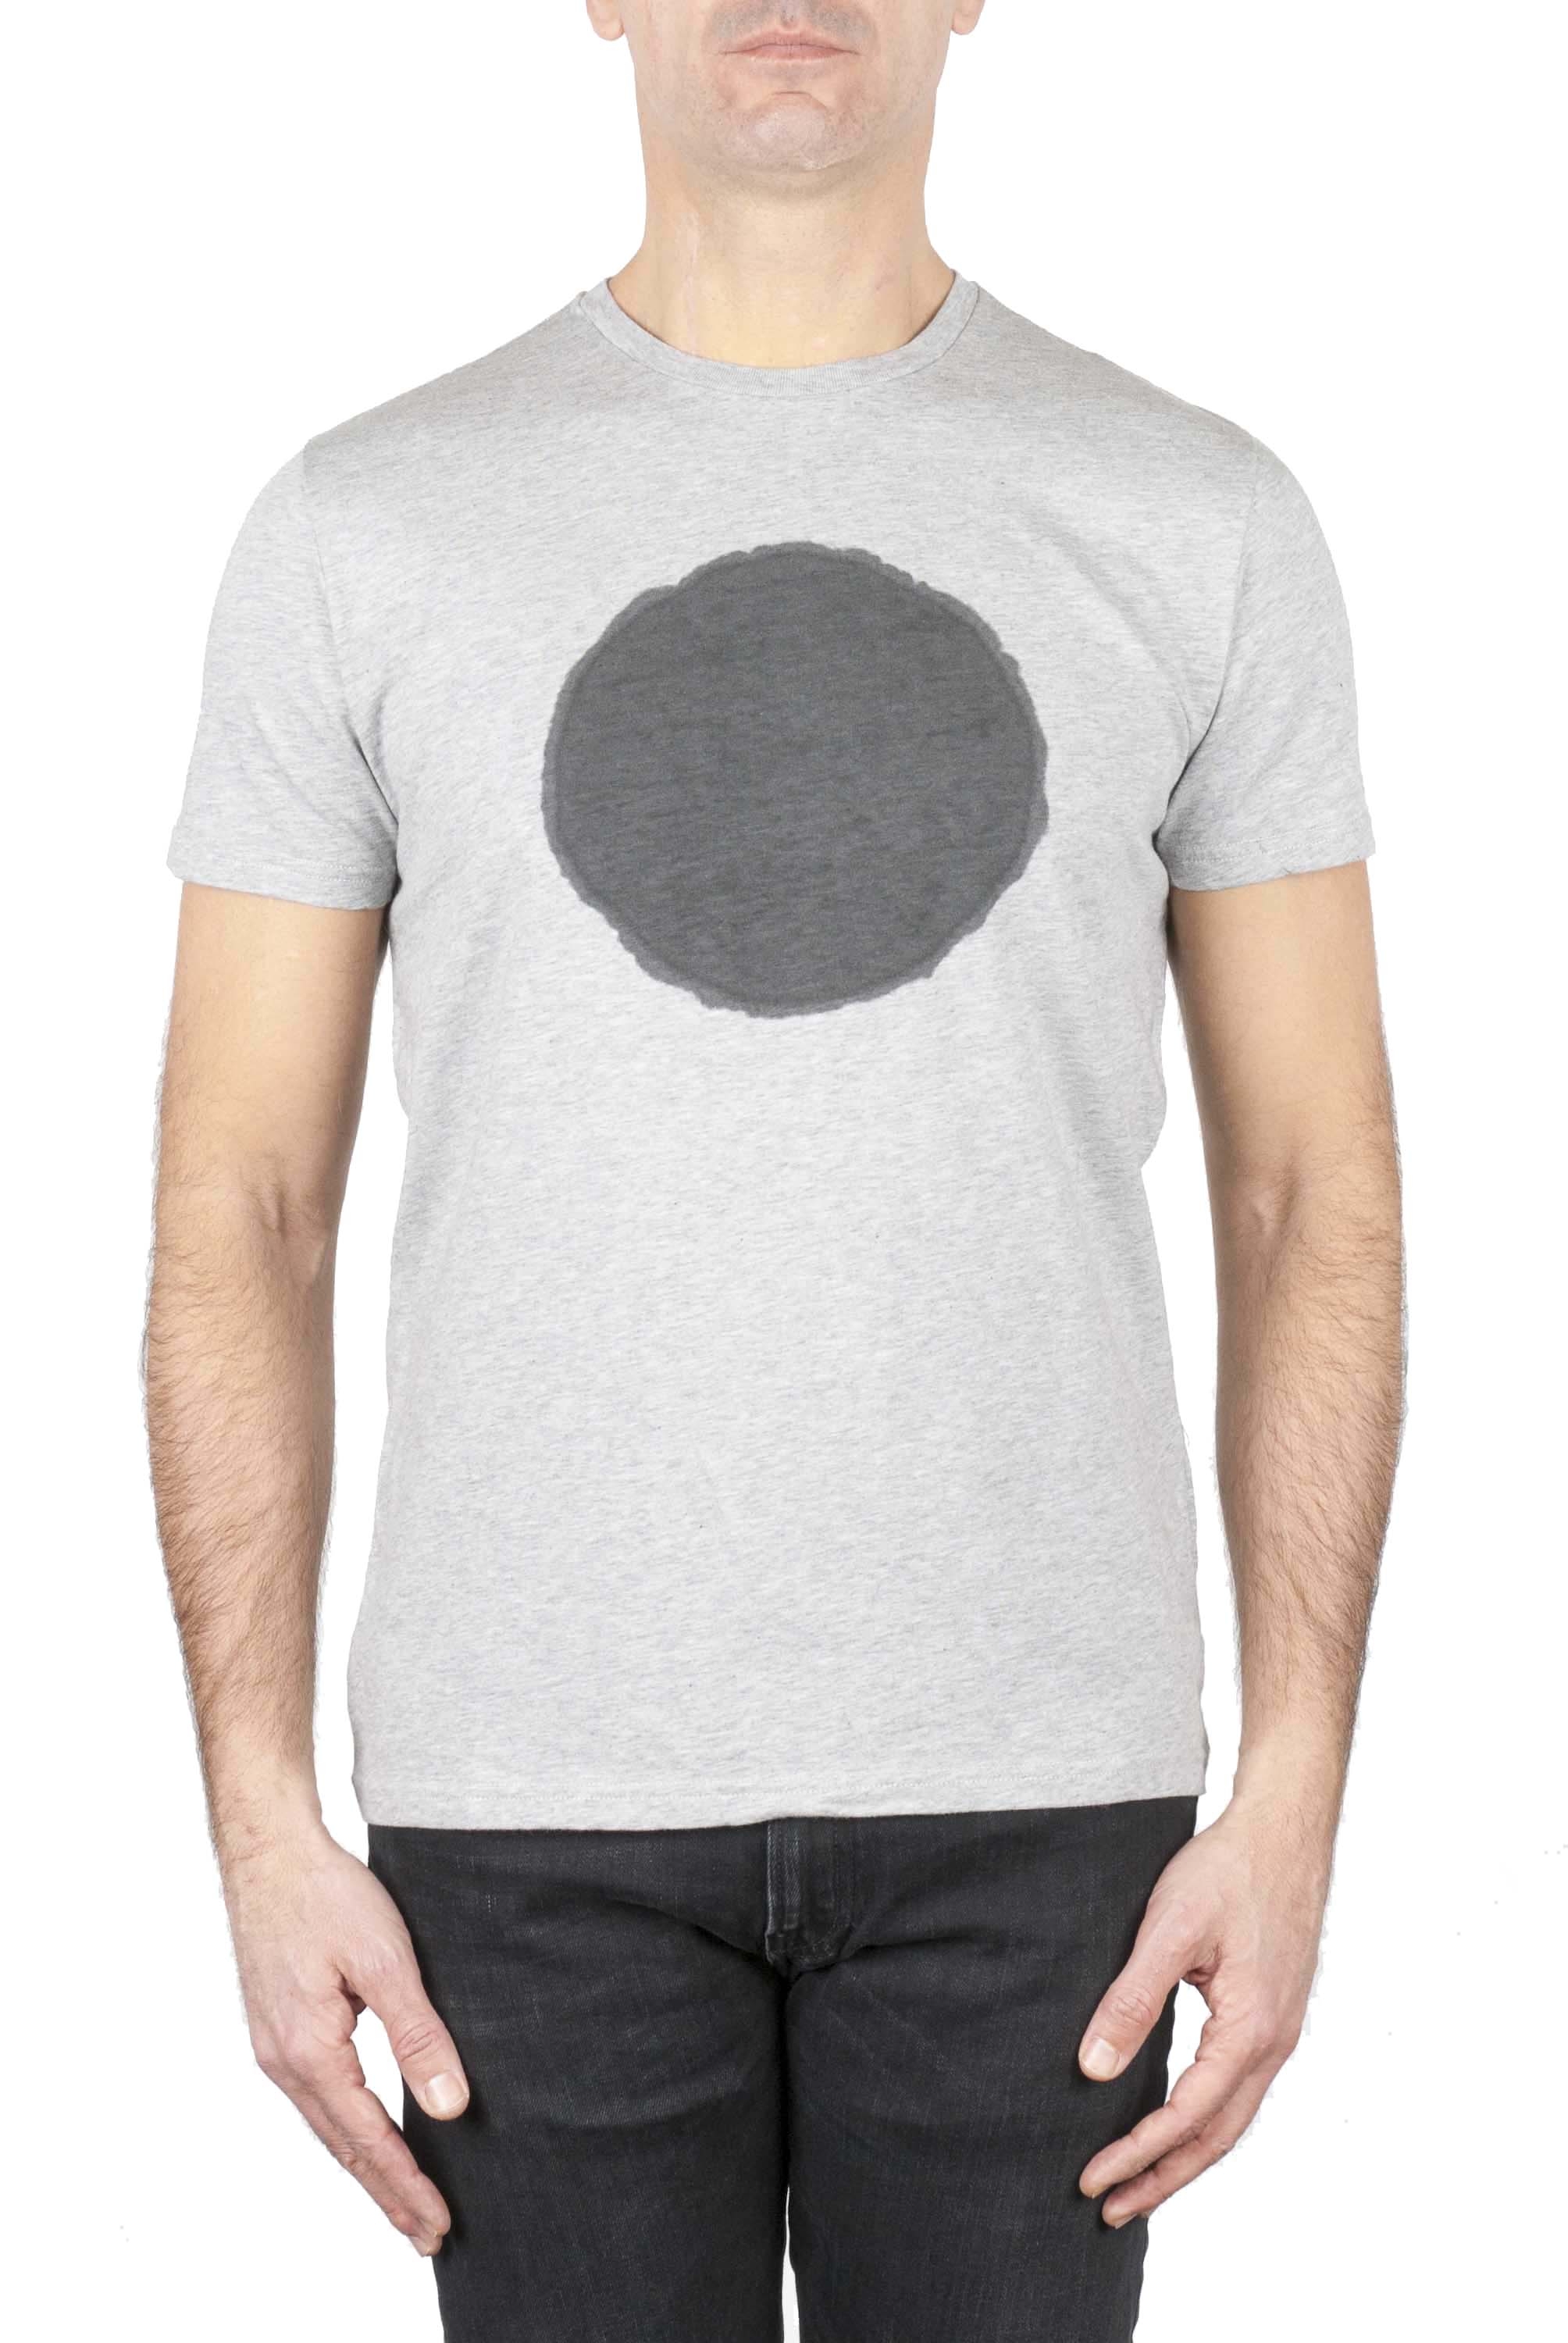 SBU 01169 Shirt classique noir et gris col rond manches courtes en coton graphique imprimé 01